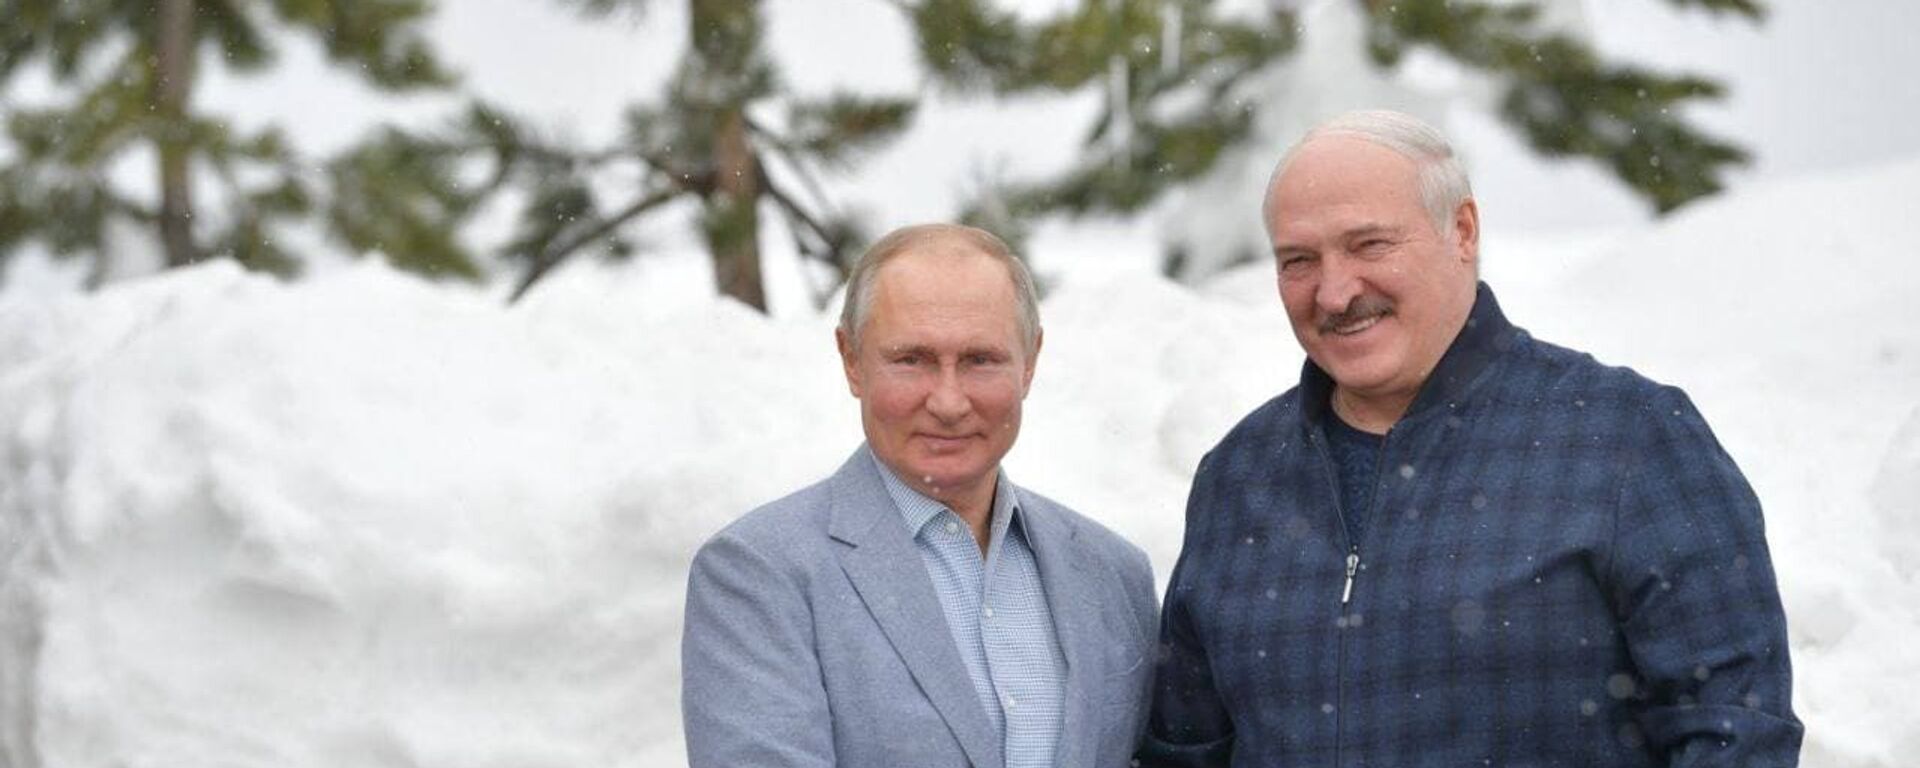 Аляксандр Лукашэнка і Уладзімір Пуцін у Сочы - Sputnik Беларусь, 1920, 22.02.2021